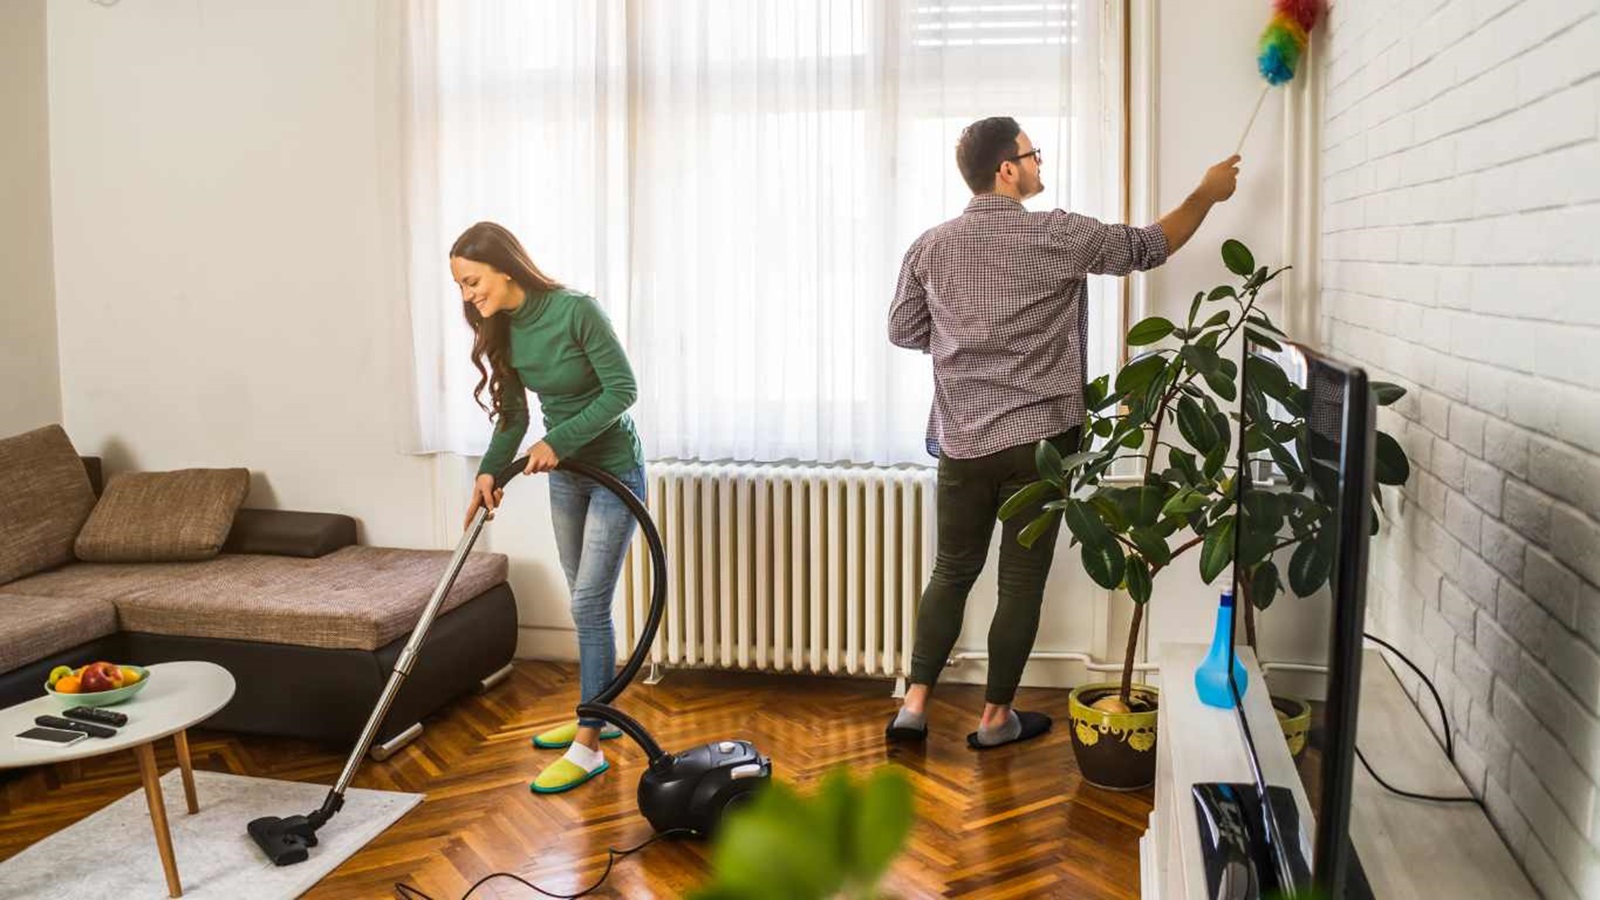 خانه تکانی را از کجا شروع کنیم: دفترچه راهنمای نظافت خانه